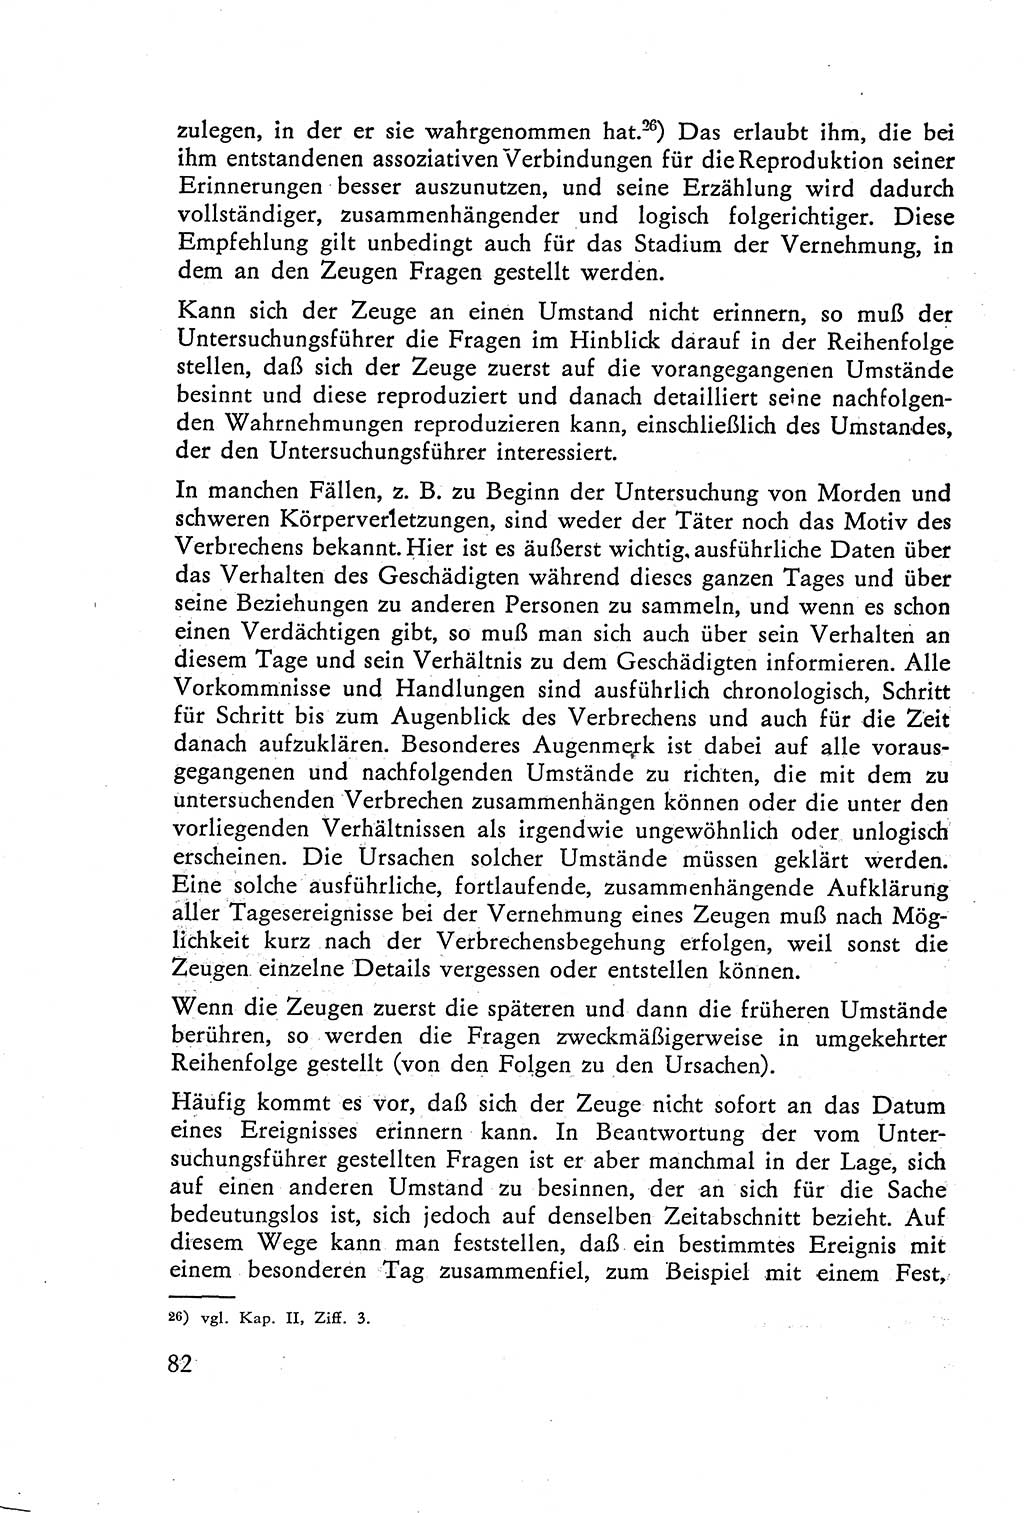 Die Vernehmung [Deutsche Demokratische Republik (DDR)] 1960, Seite 82 (Vern. DDR 1960, S. 82)